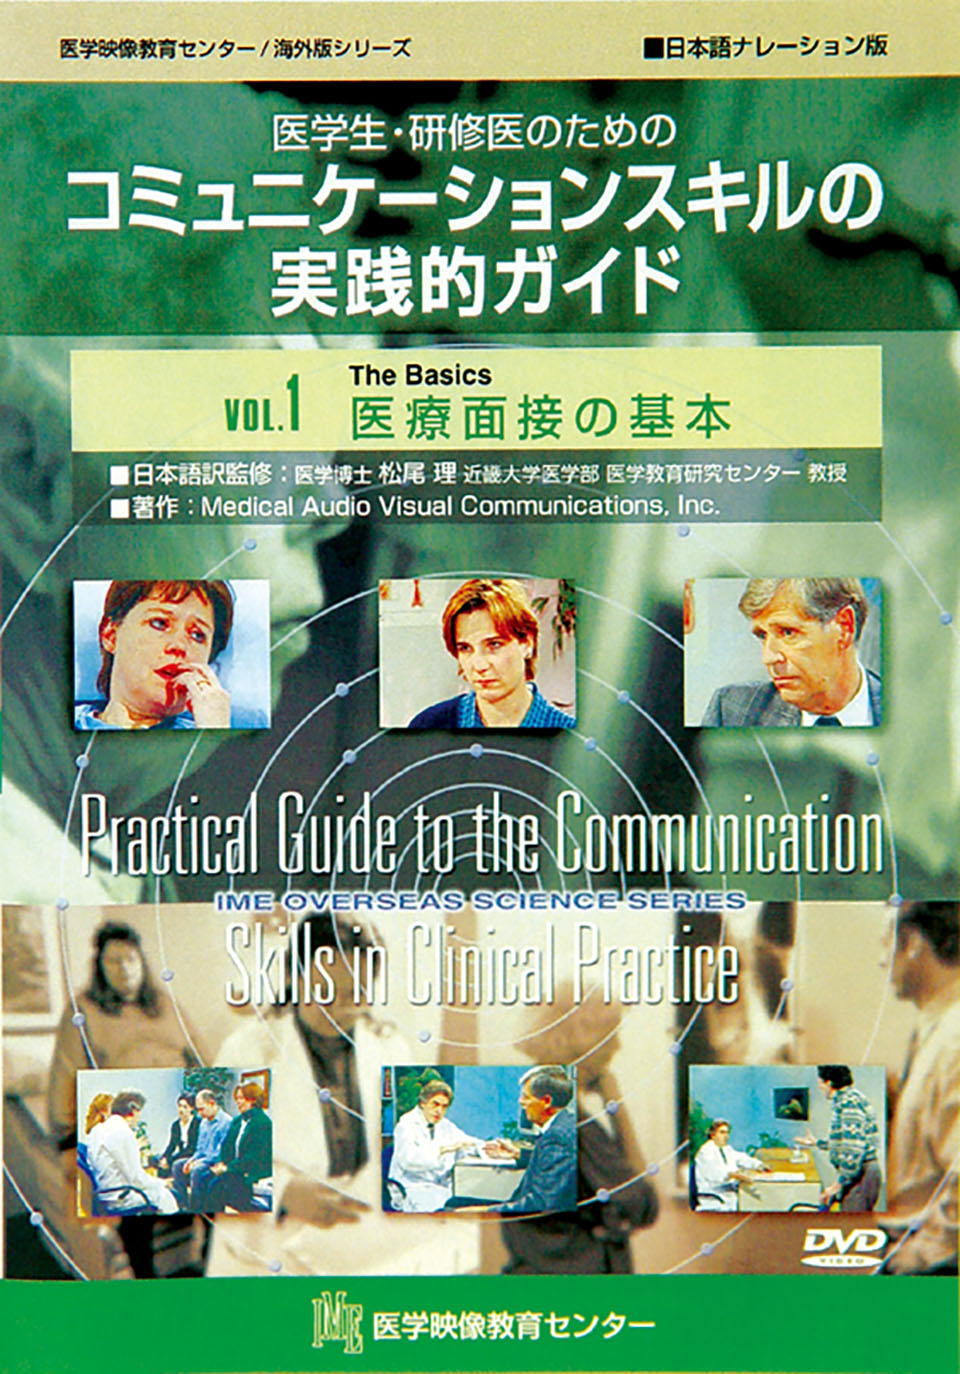 医学生・研修医のためのコミュニケーションスキルの実践的ガイドのジャケット画像